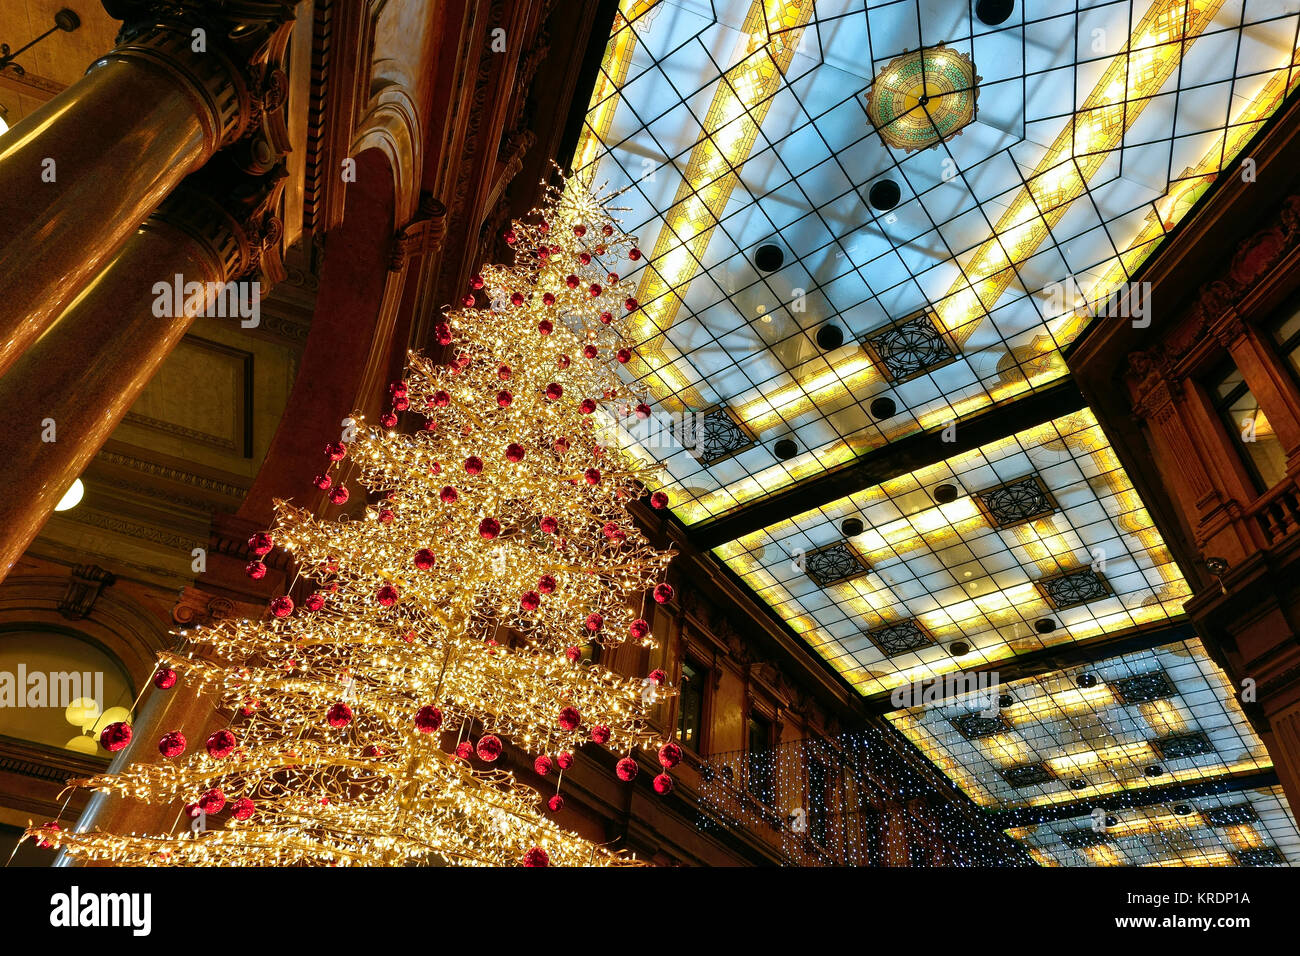 Rom Weihnachten LED-Lichter Baum, Galleria Alberto Sordi, früher Galleria Colonna, Via del Corso, Rom, Italien, Europa, EU. Weihnachten Weihnachten Weihnachten Stimmung. Stockfoto